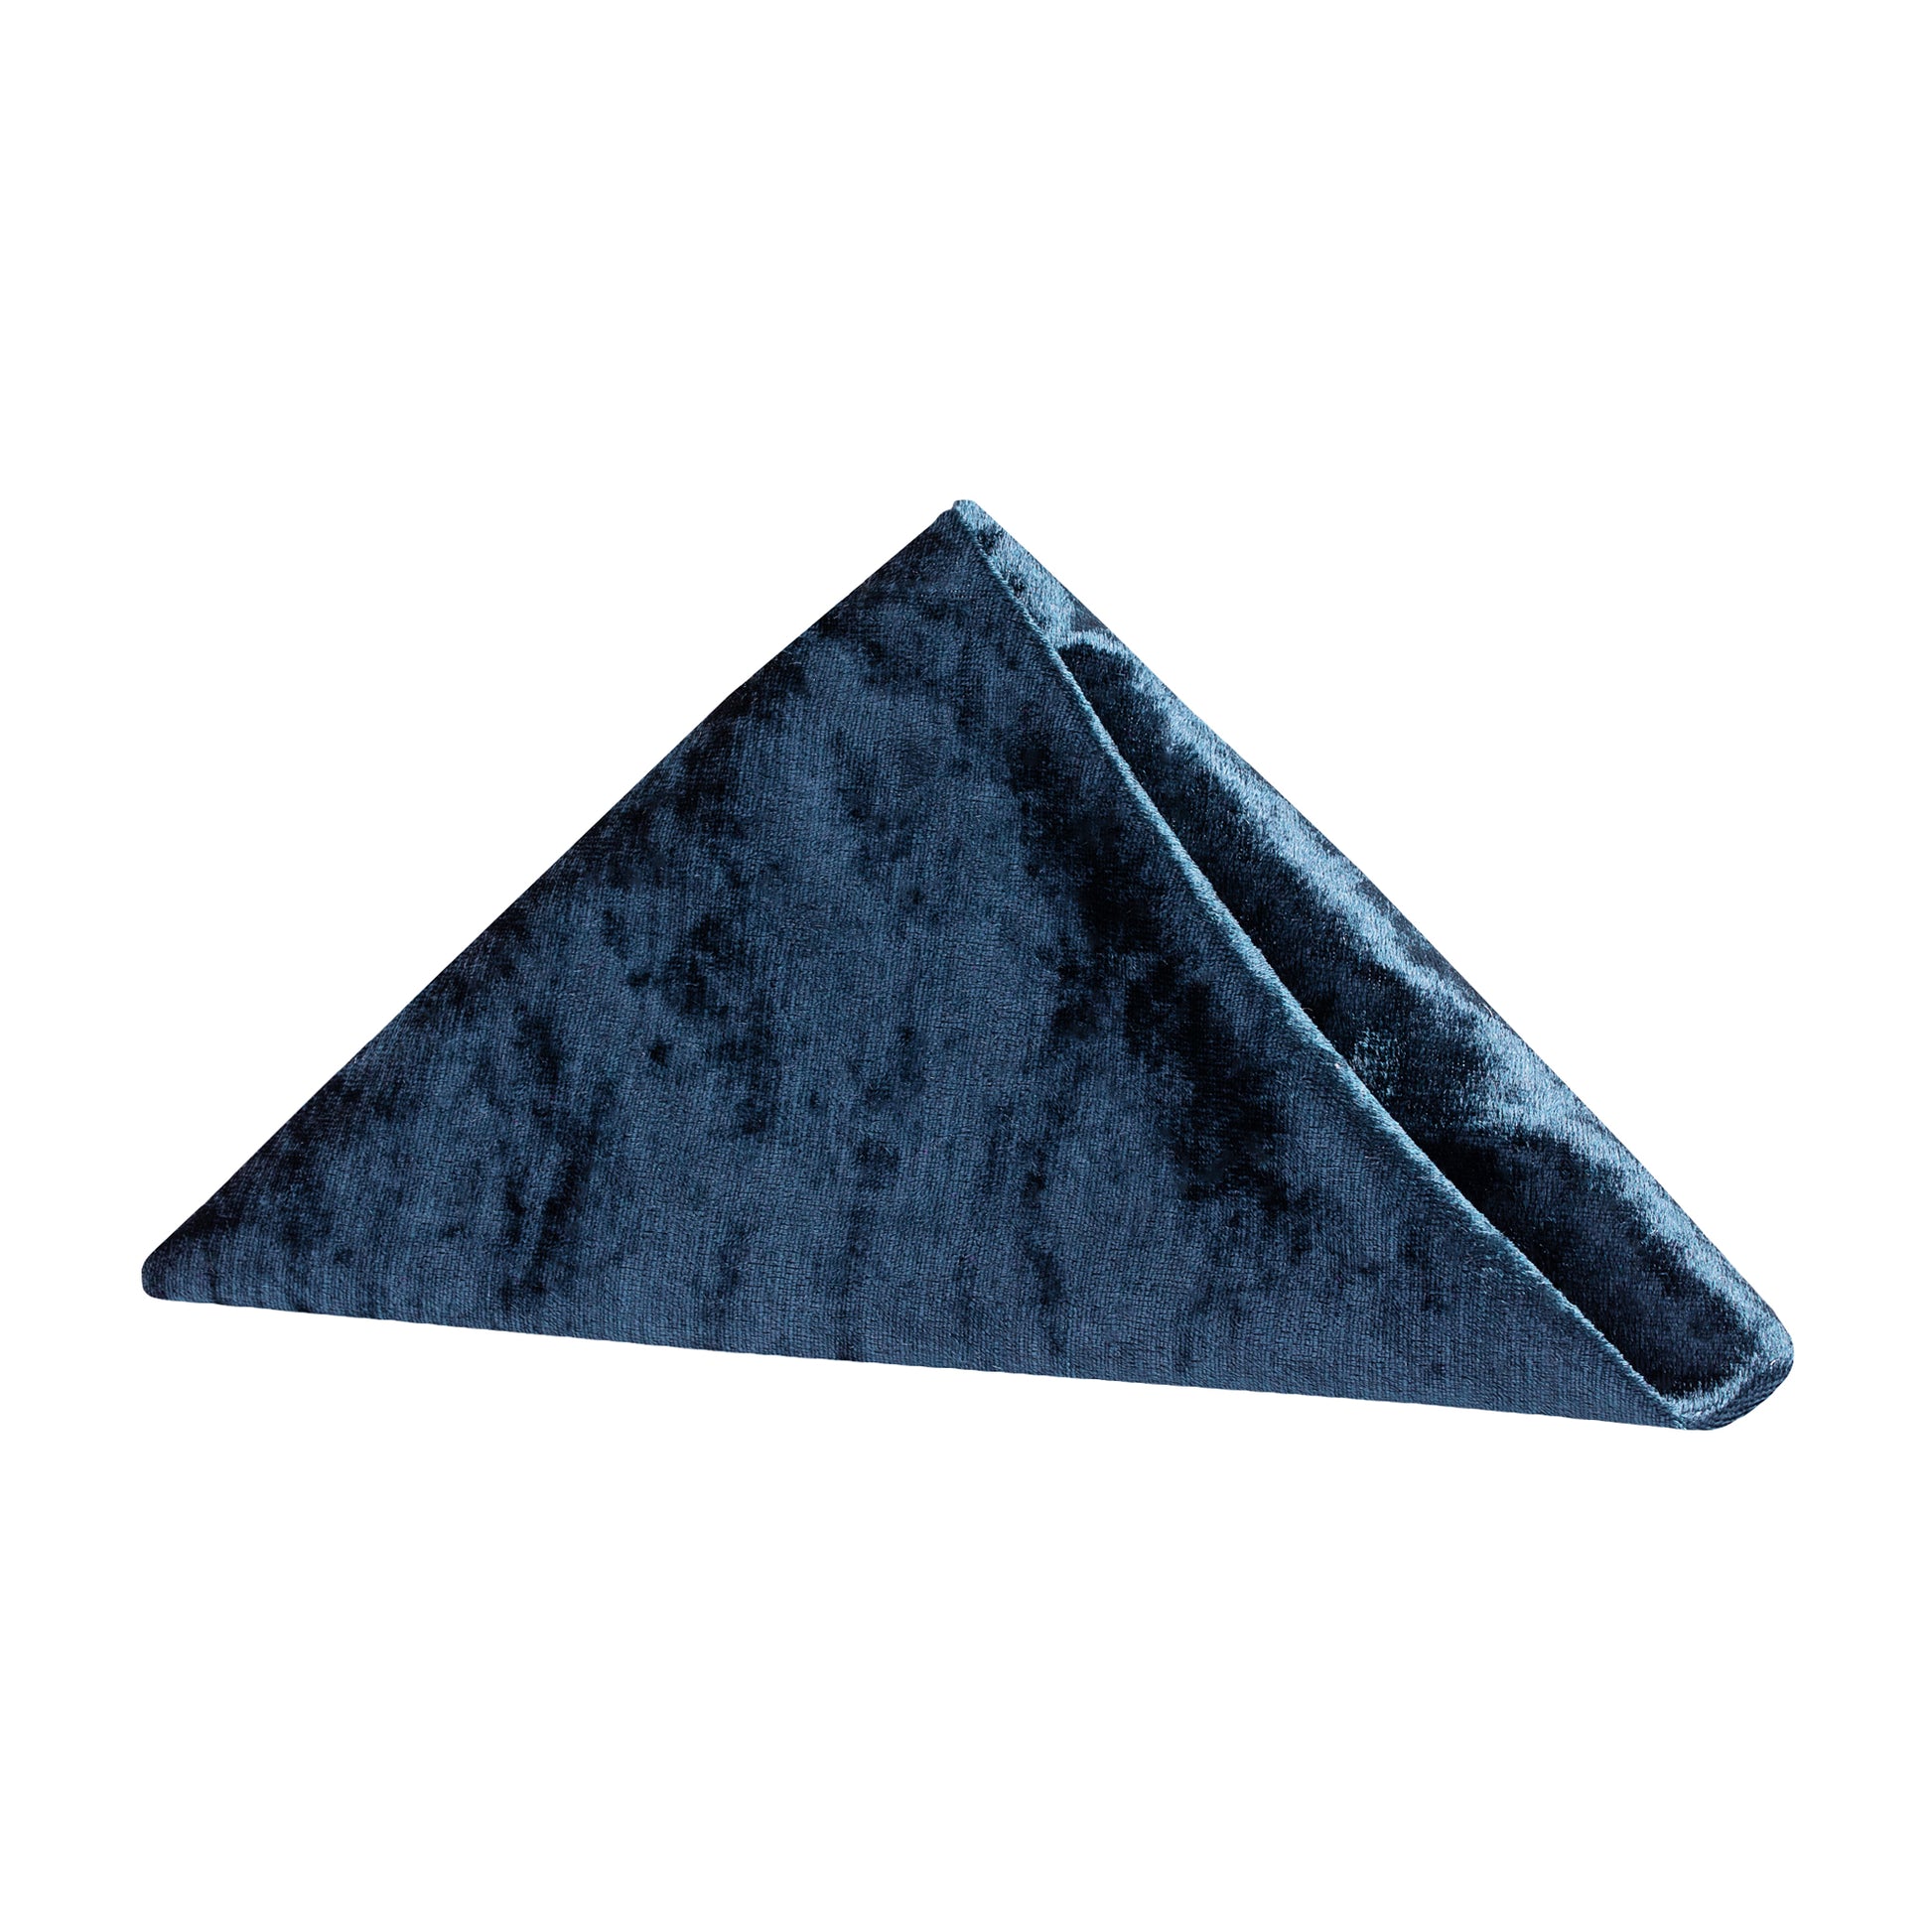 Velvet 20"x20" Linen Napkin - Navy Blue - CV Linens